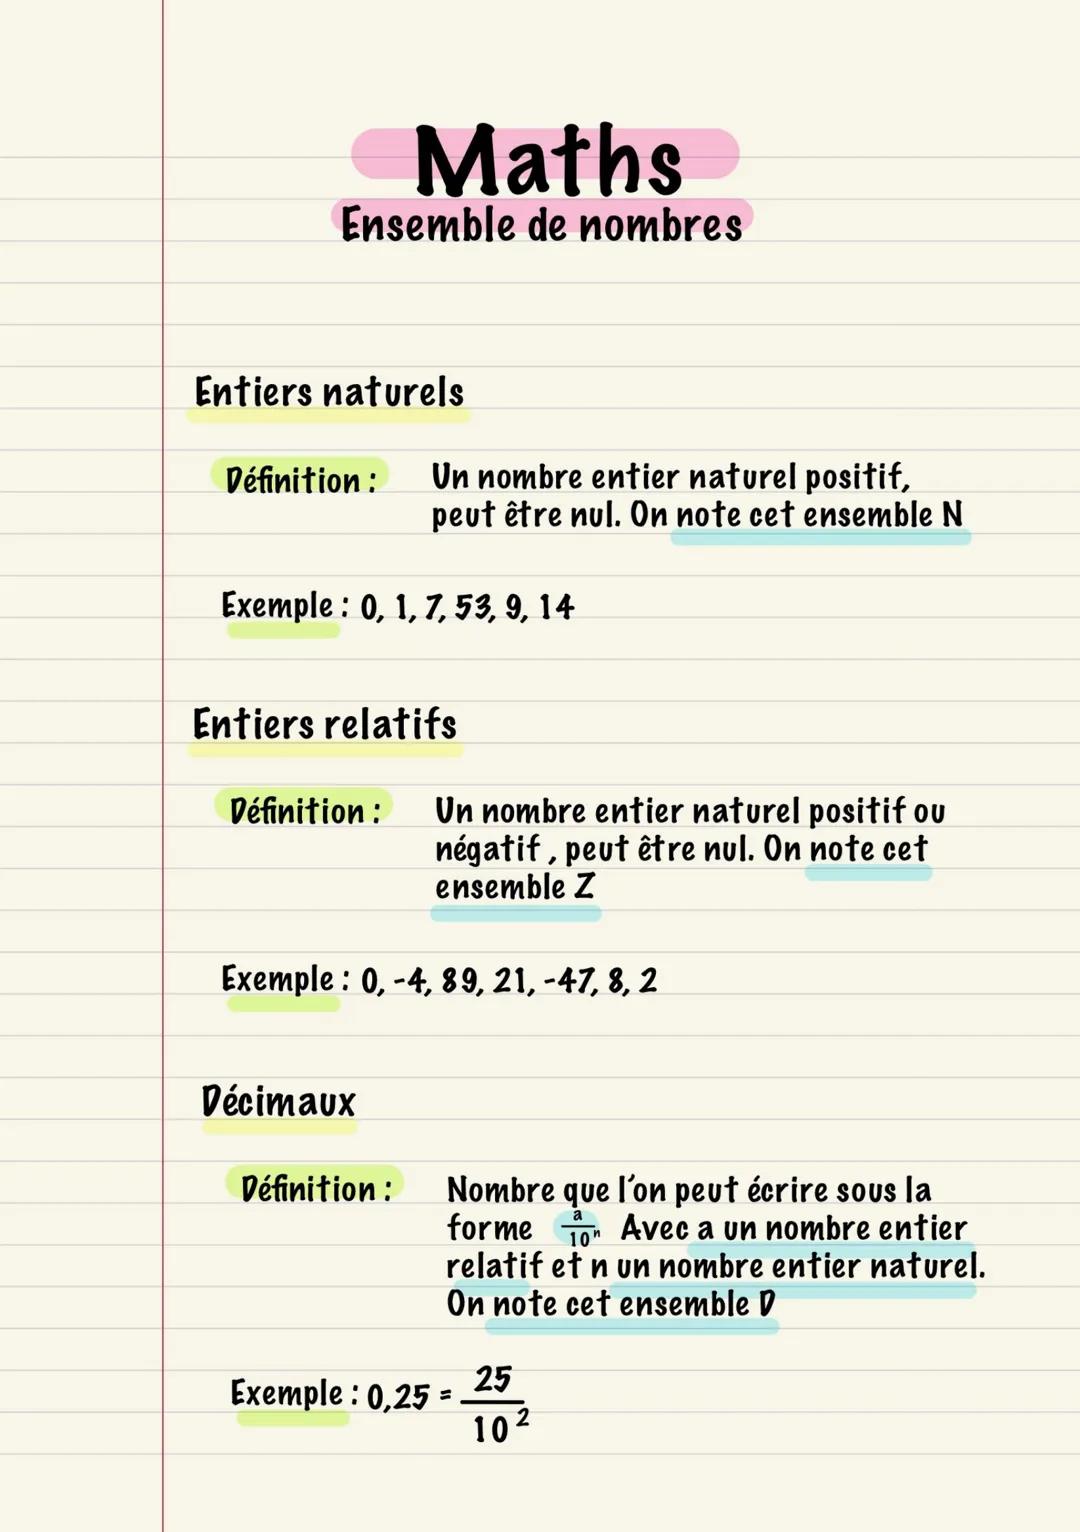 Maths
Ensemble de nombres
Entiers naturels
Définition:
Exemple: 0, 1, 7, 53, 9, 14
Un nombre entier naturel positif,
peut être nul. On note 